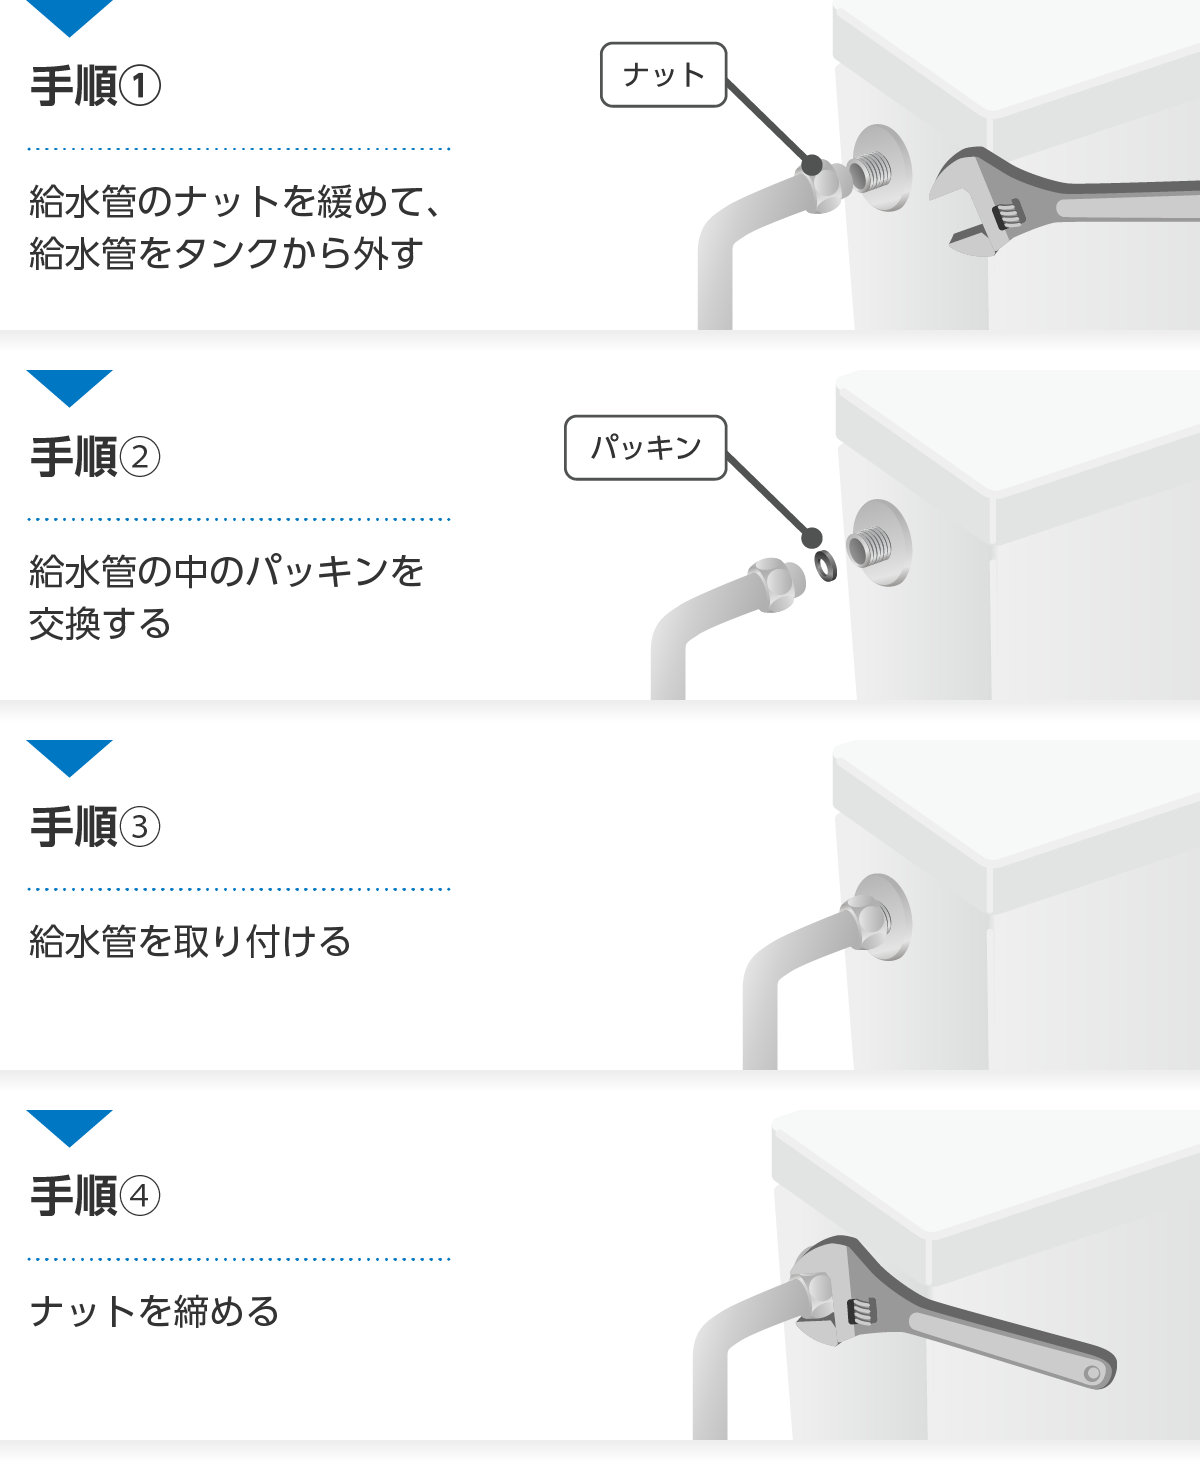 トイレタンクと給水管の接続部分のパッキン交換方法